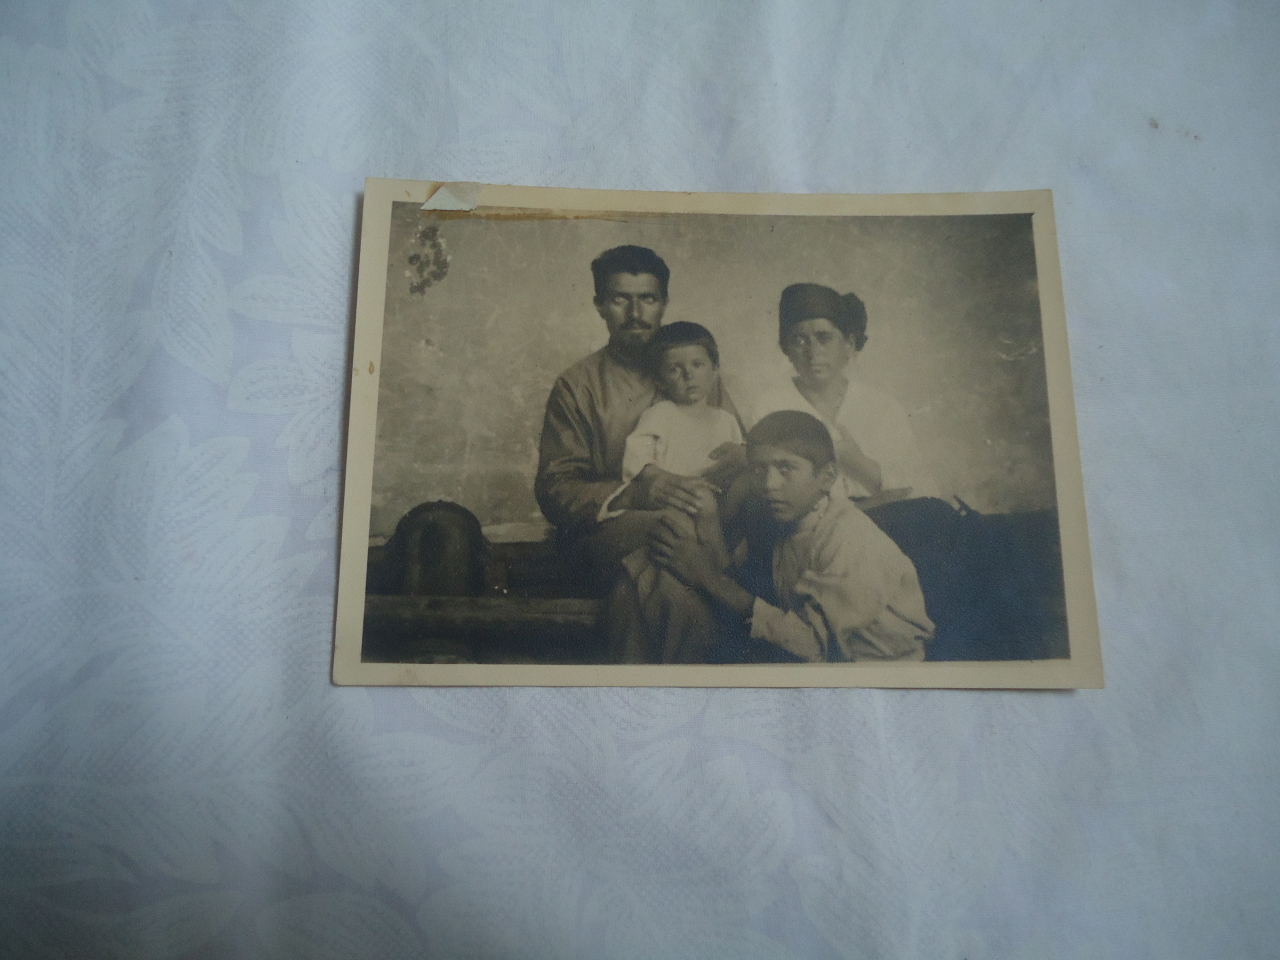 լուսանկար՝ Ստեփան Շահումյանի հանդիպումը իր ընտանիքի հետ